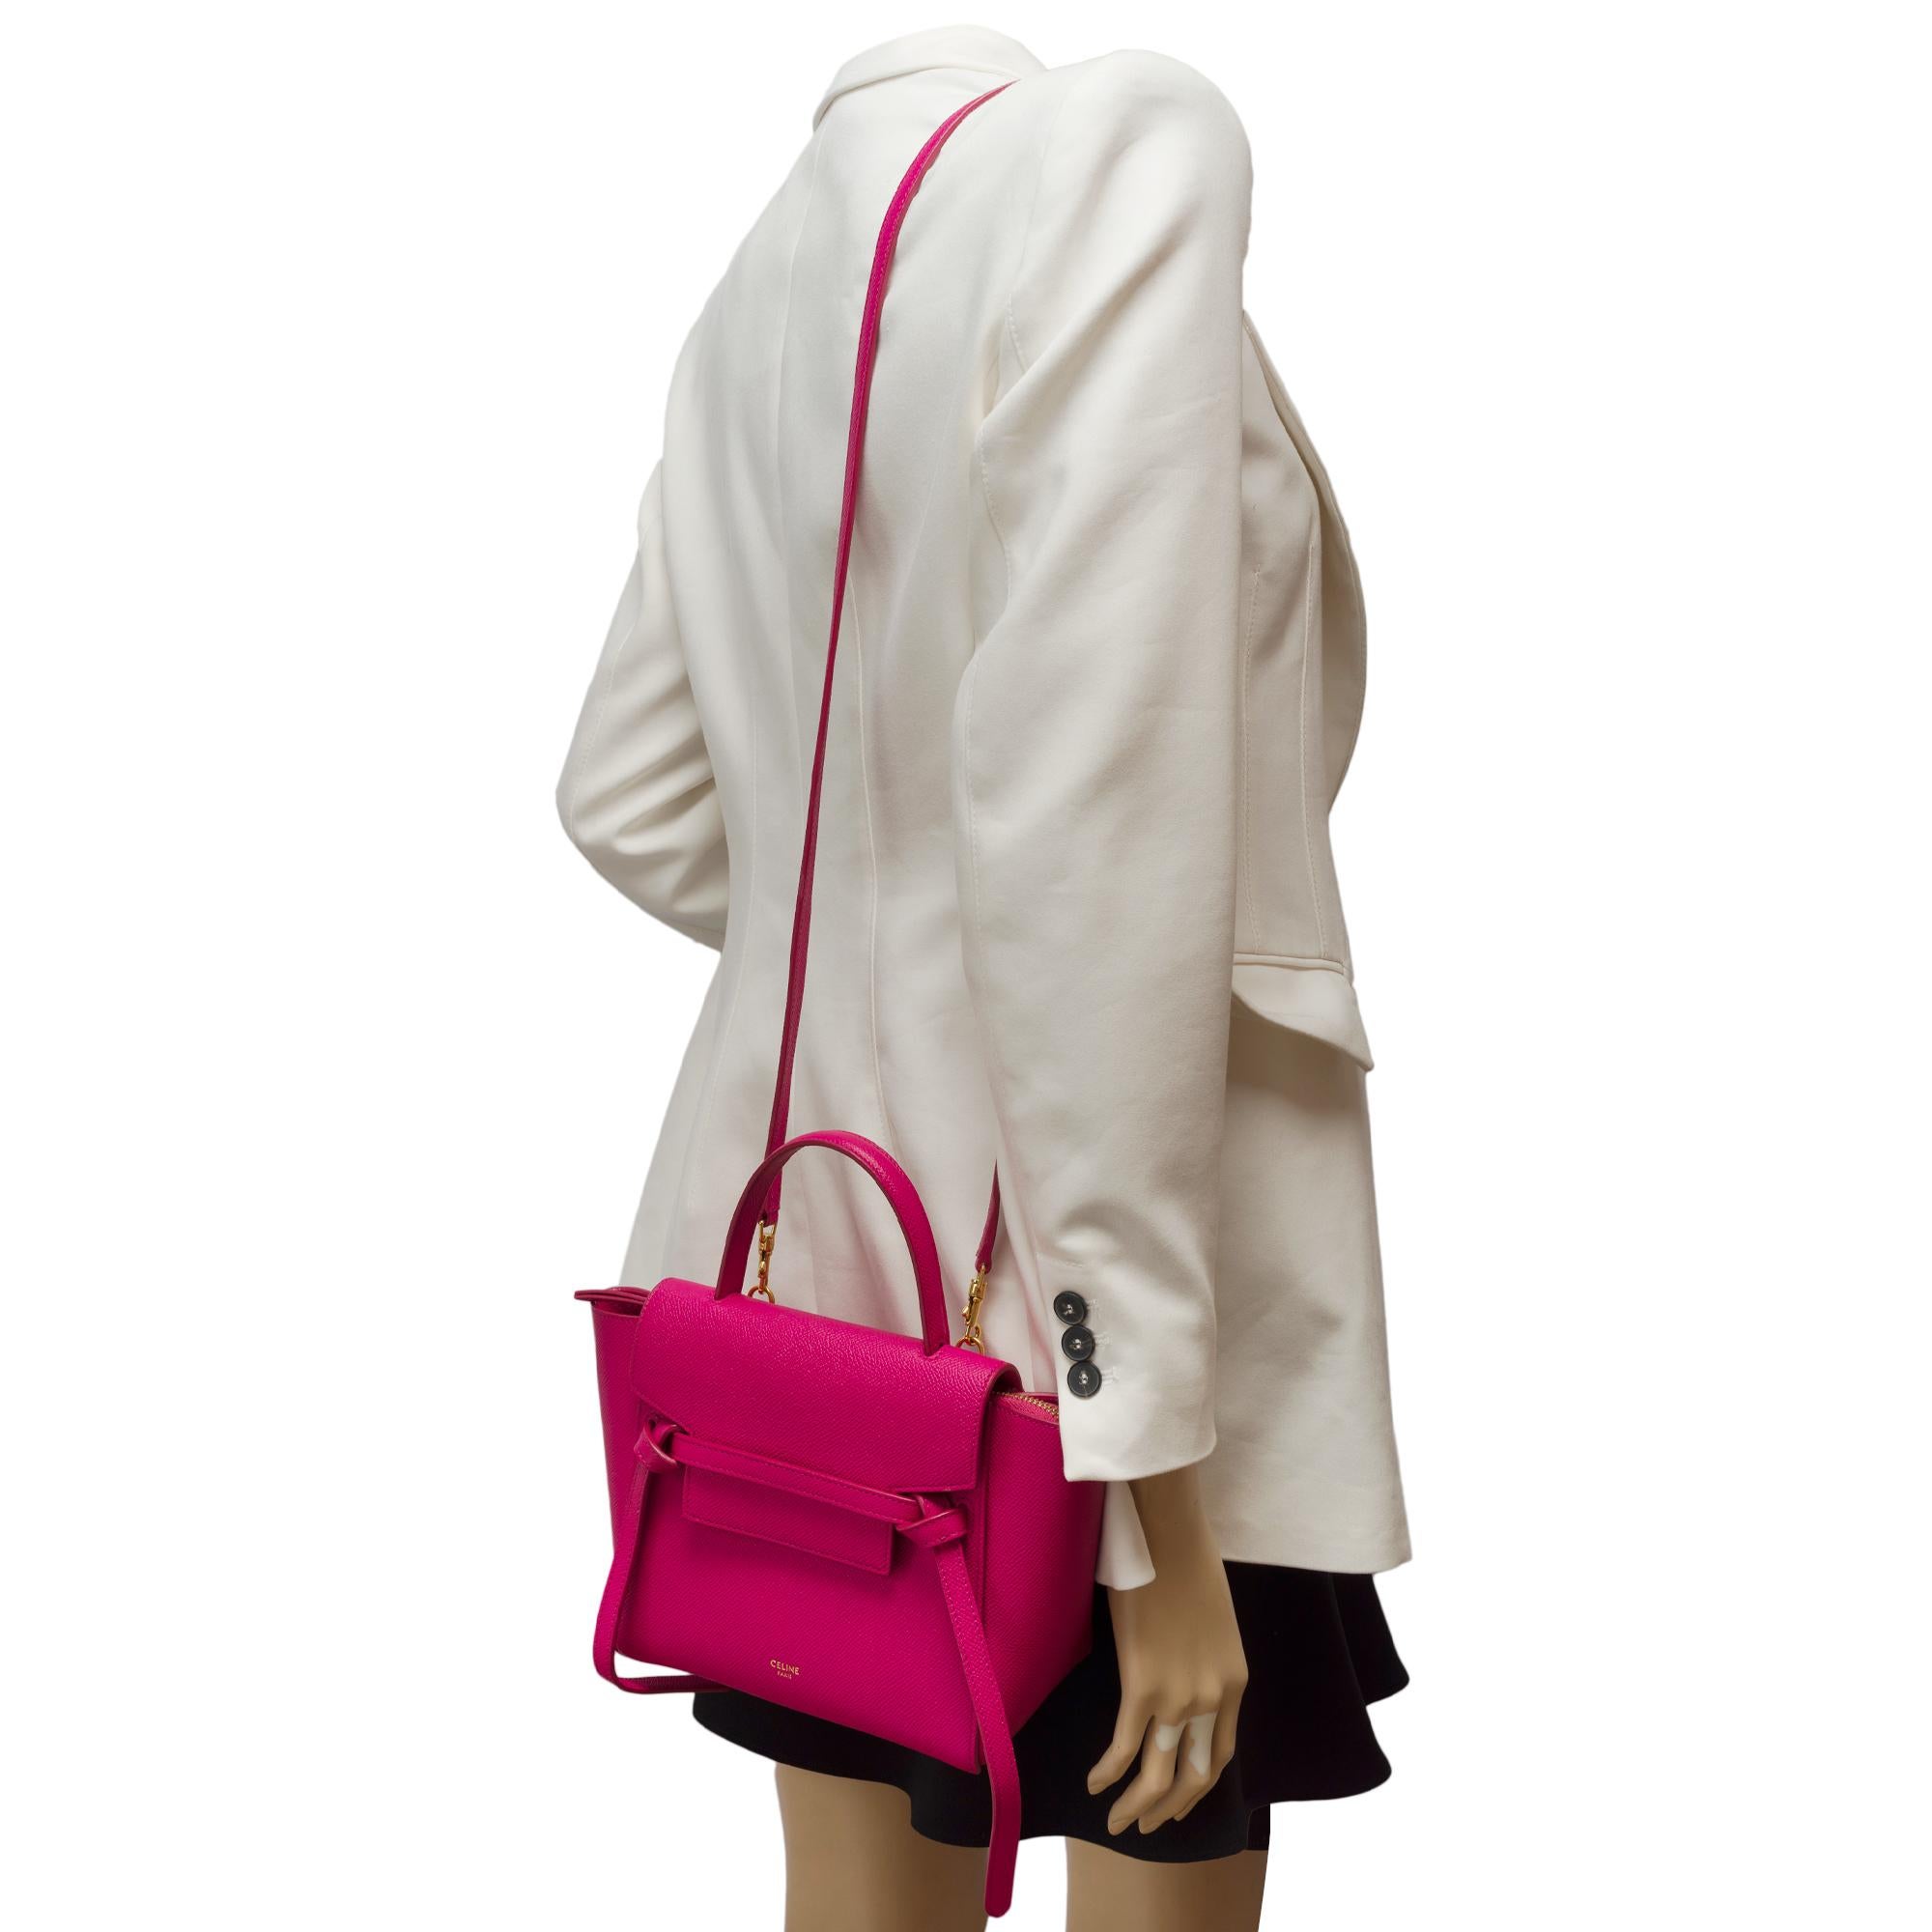 Celine Belt Nano handbag strap in pink calf leather, GHW 9